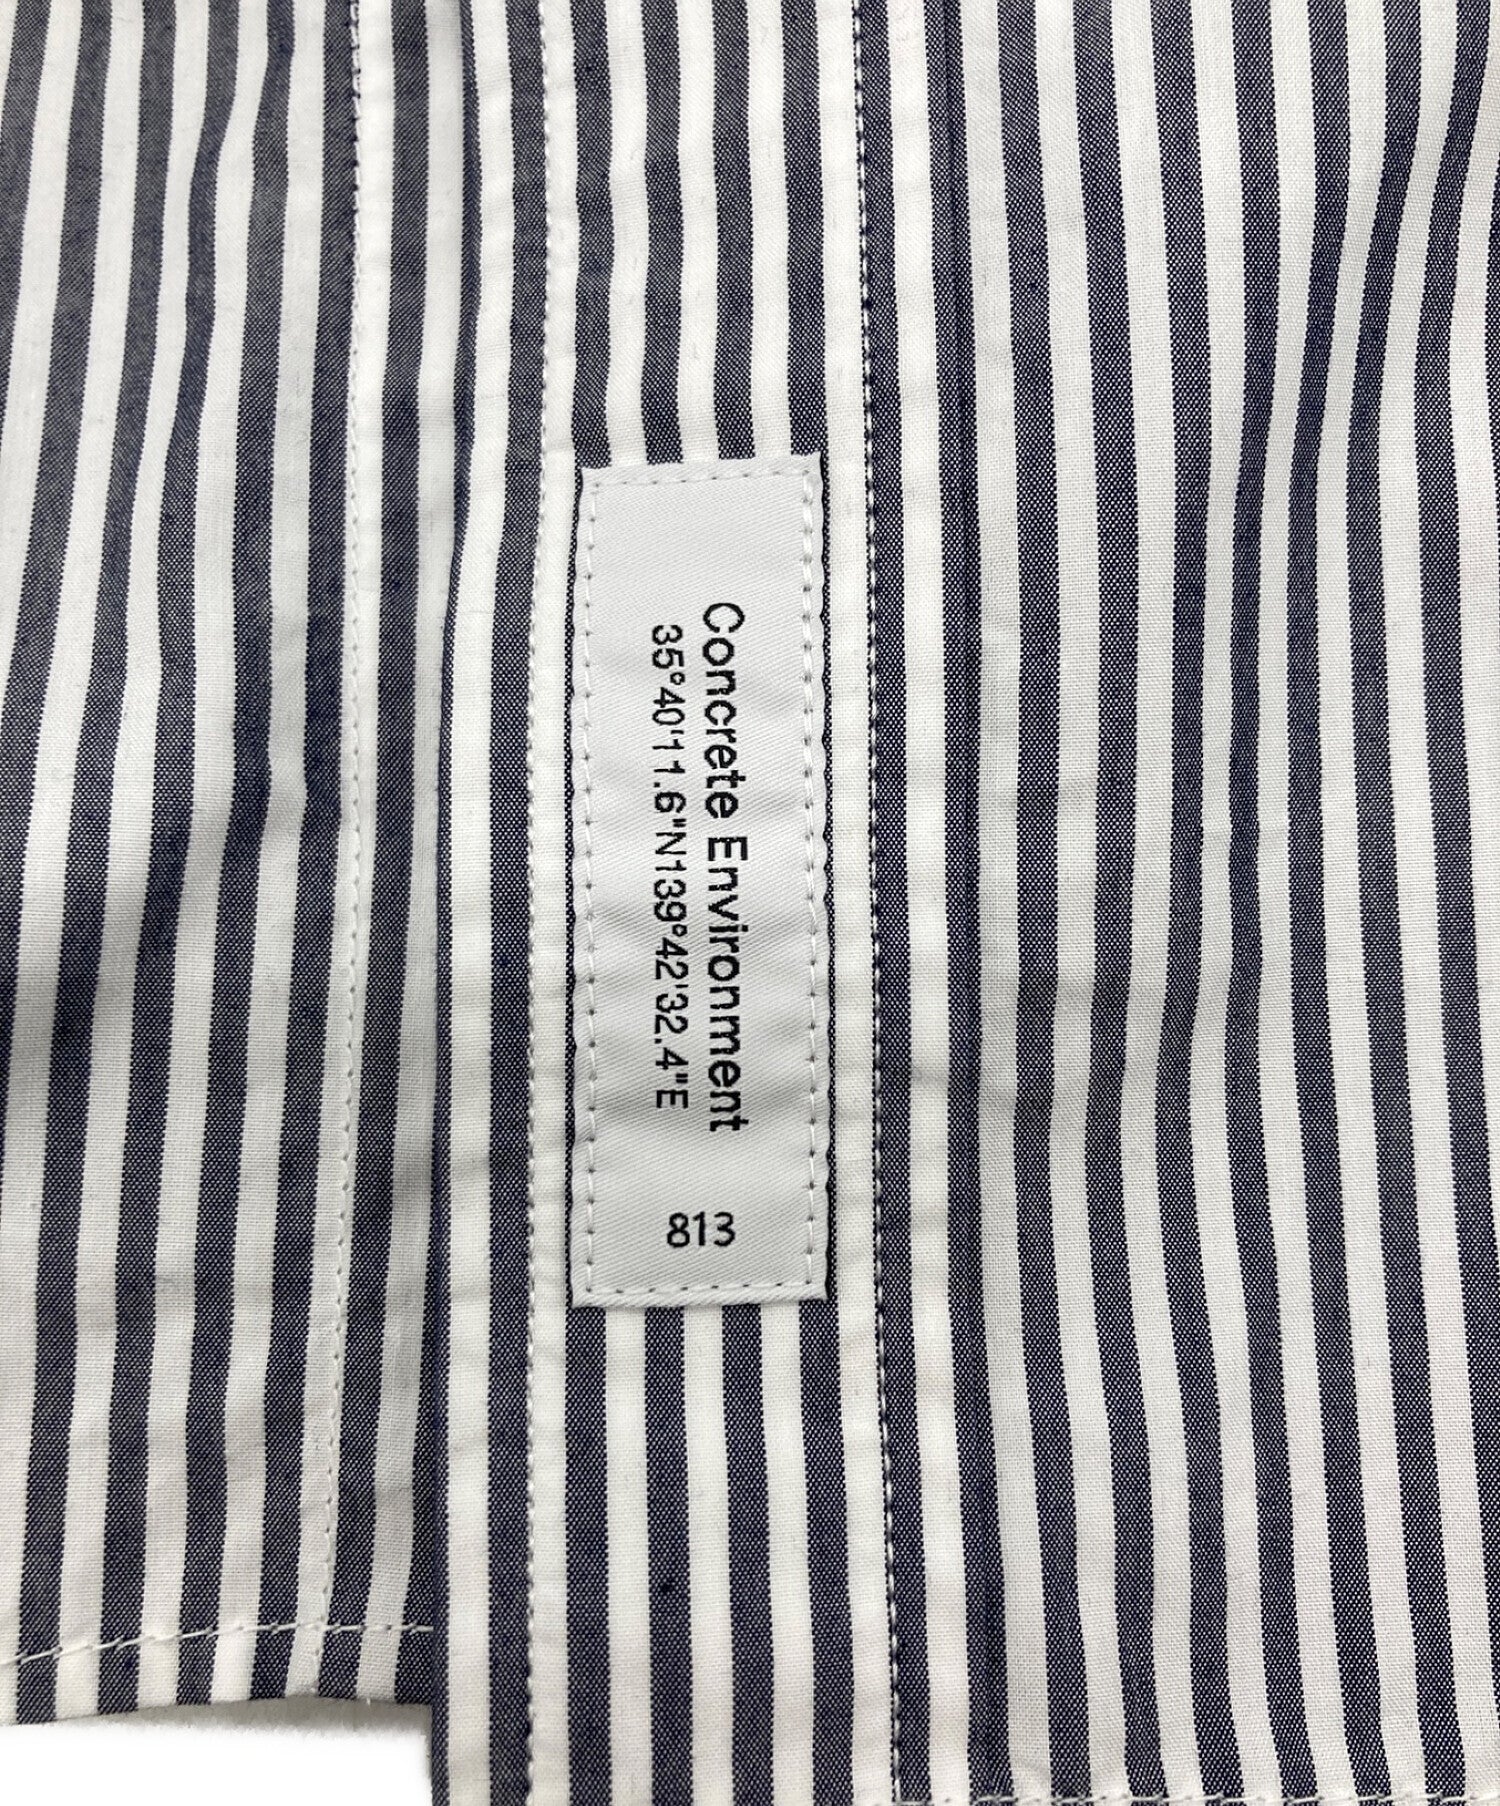 [Pre-owned] WTAPS COOLMAX Stripe B.D Shirts 231GWDT-SHM03